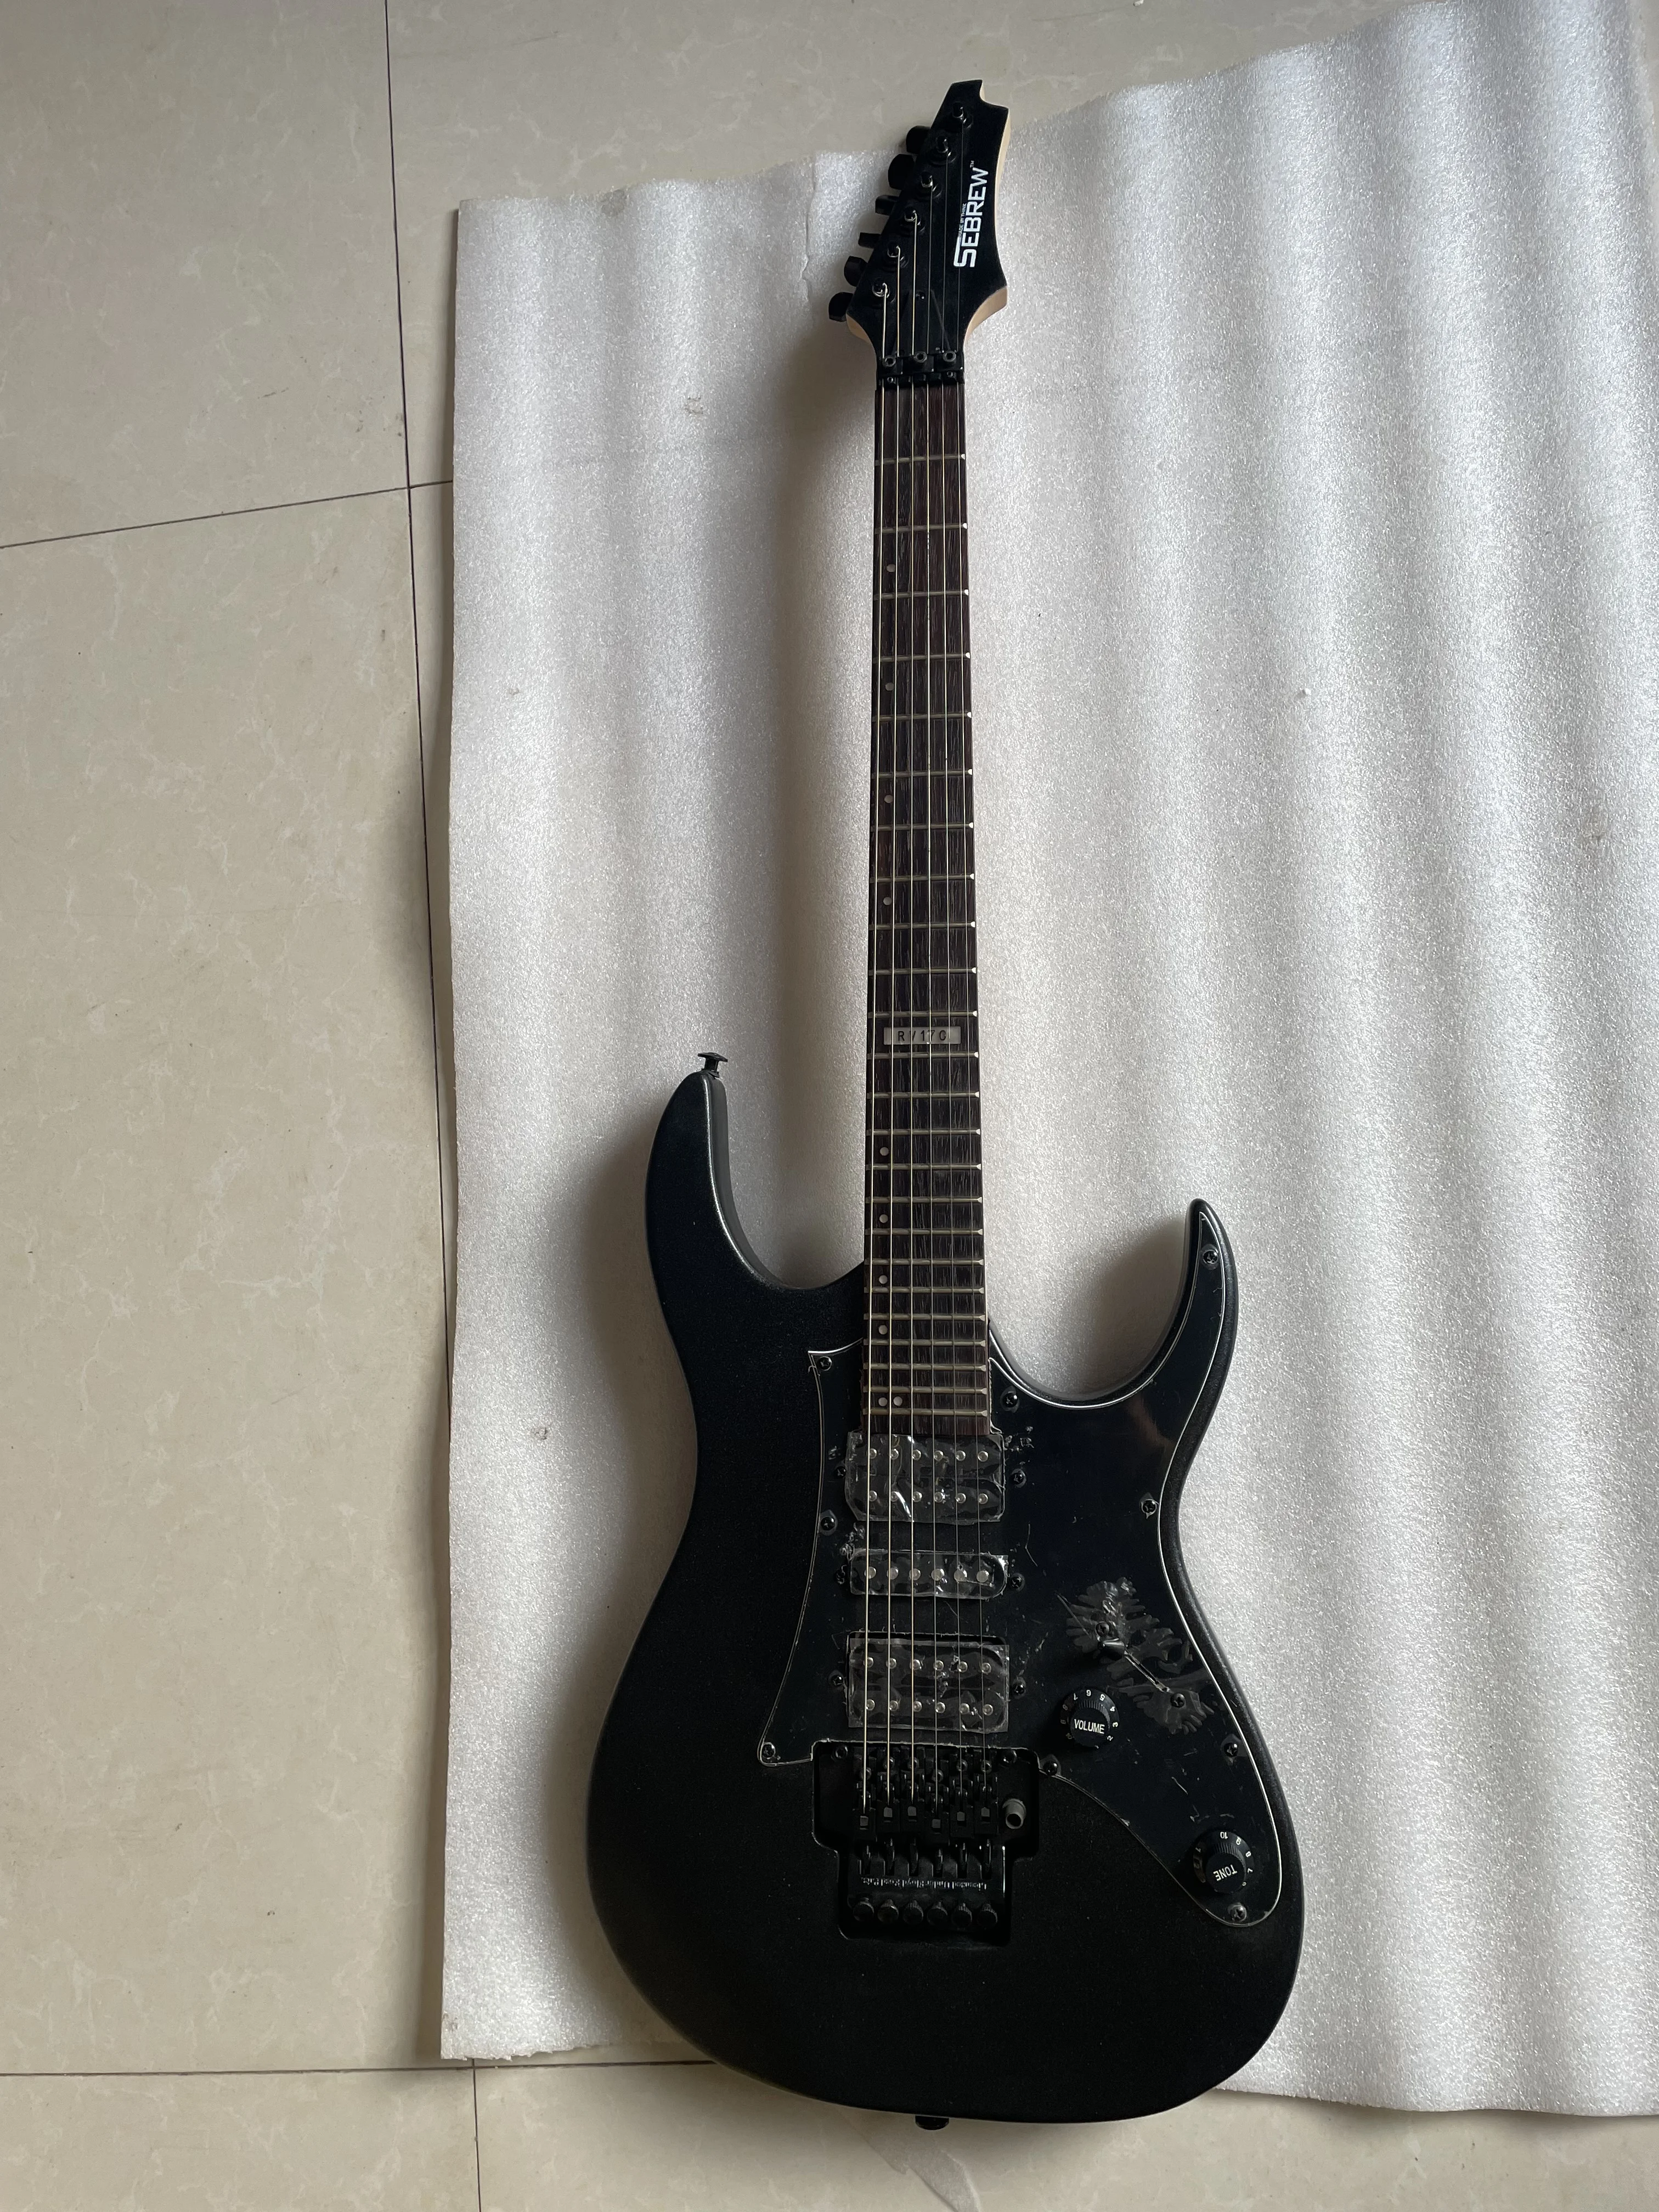 

Металлическая черная HSH электрическая гитара Floyd Rose, стандартная, индивидуальный стиль, черные металлические изделия, 6 струн, только один, отправка в течение 3 дней